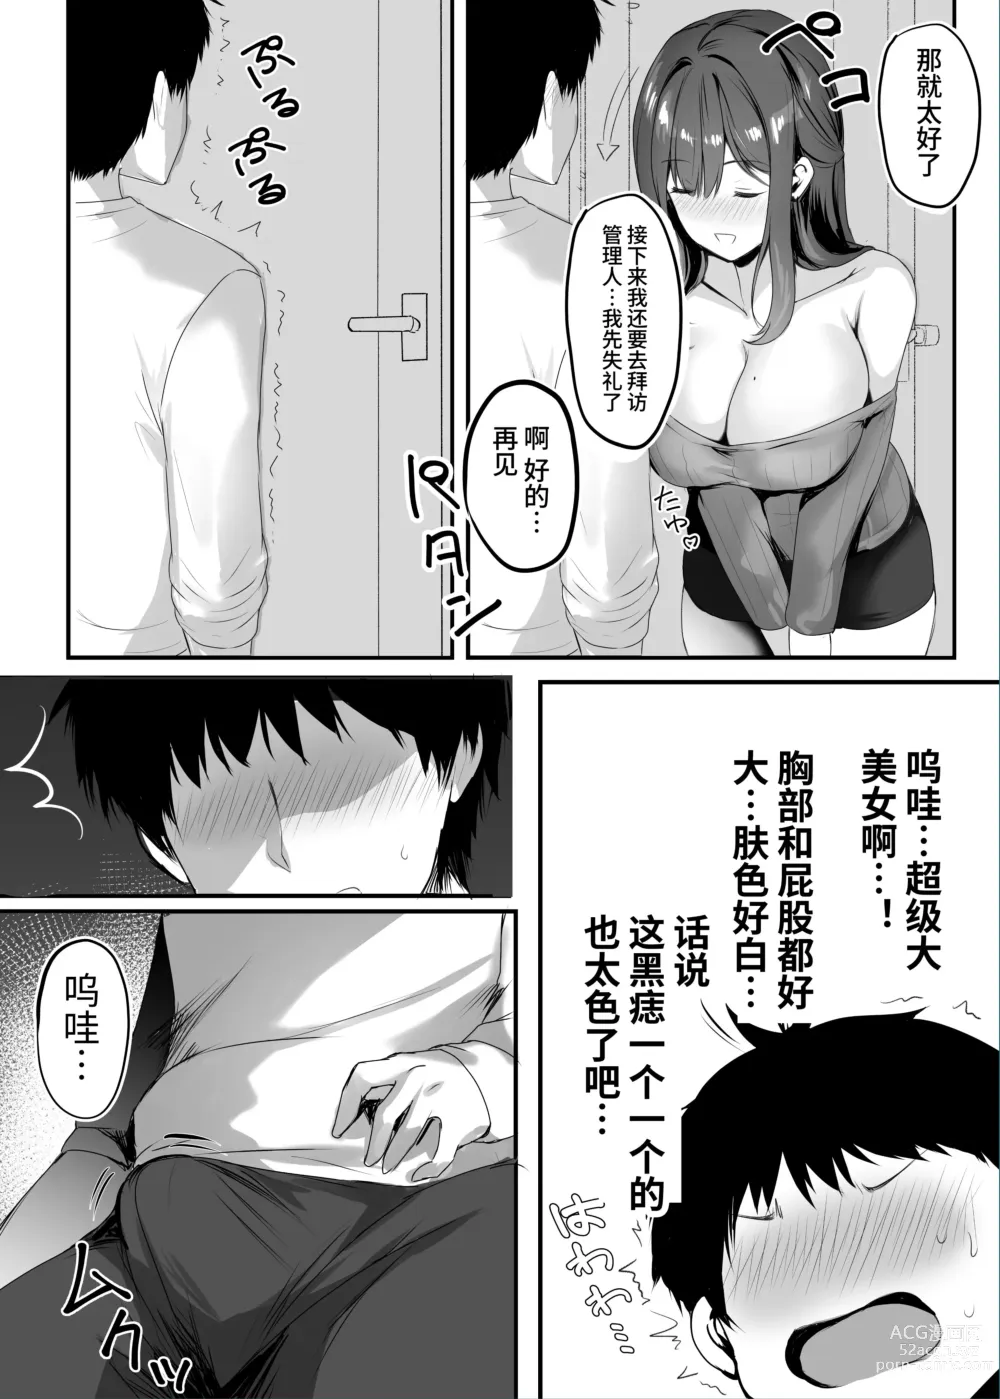 Page 9 of doujinshi Numaru.